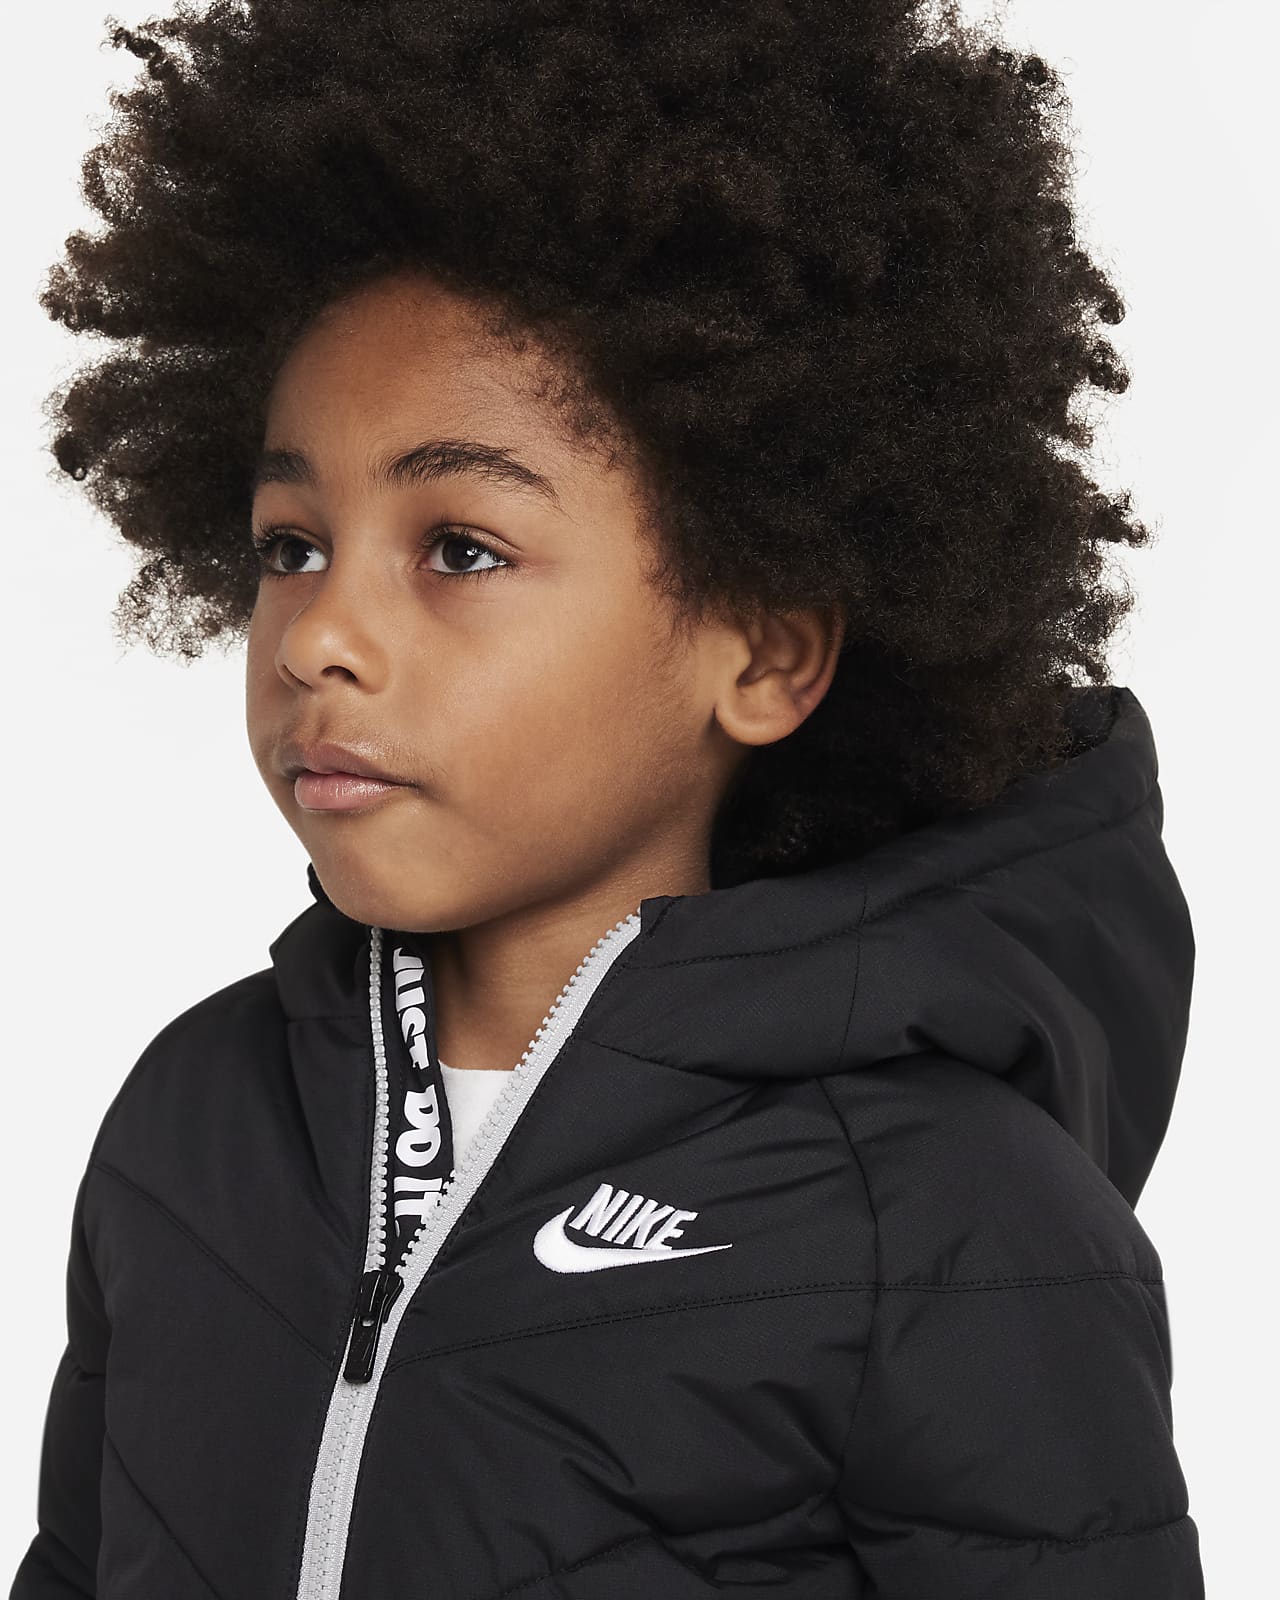 Detecteerbaar defect Buitengewoon Nike Toddler Hooded Chevron Puffer Jacket. Nike LU